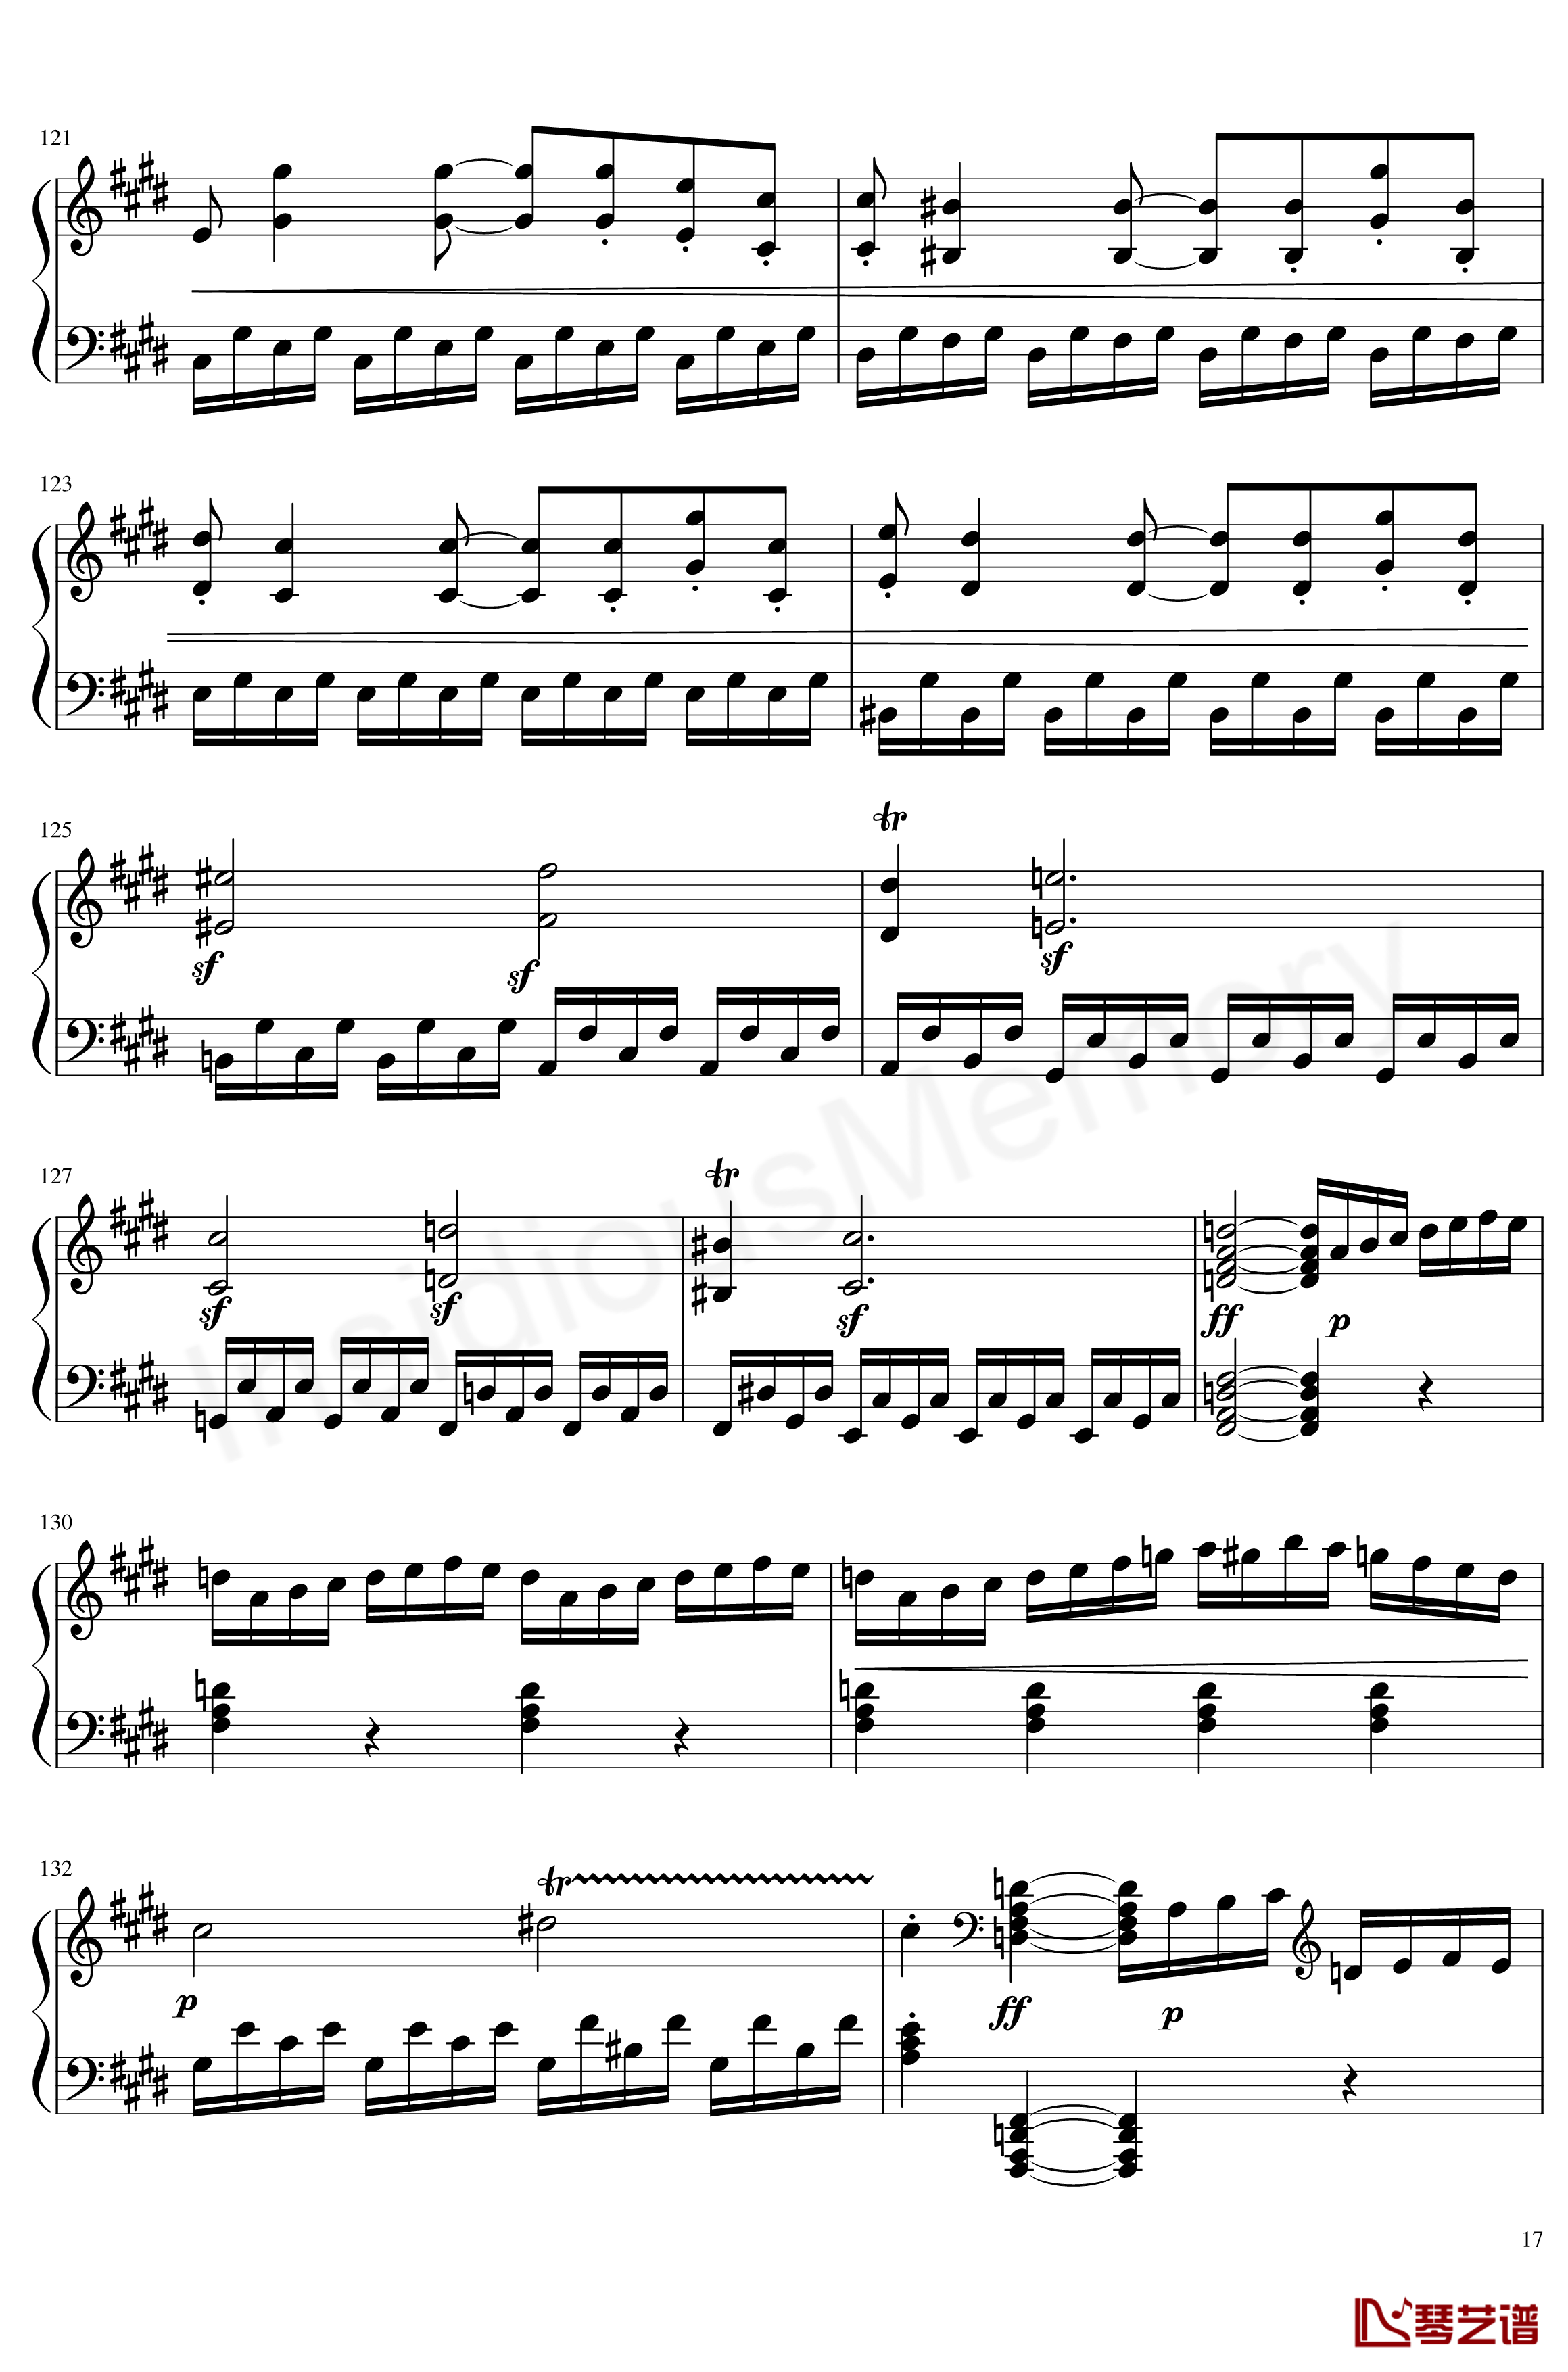 月光奏鸣曲钢琴谱-贝多芬-beethoven17